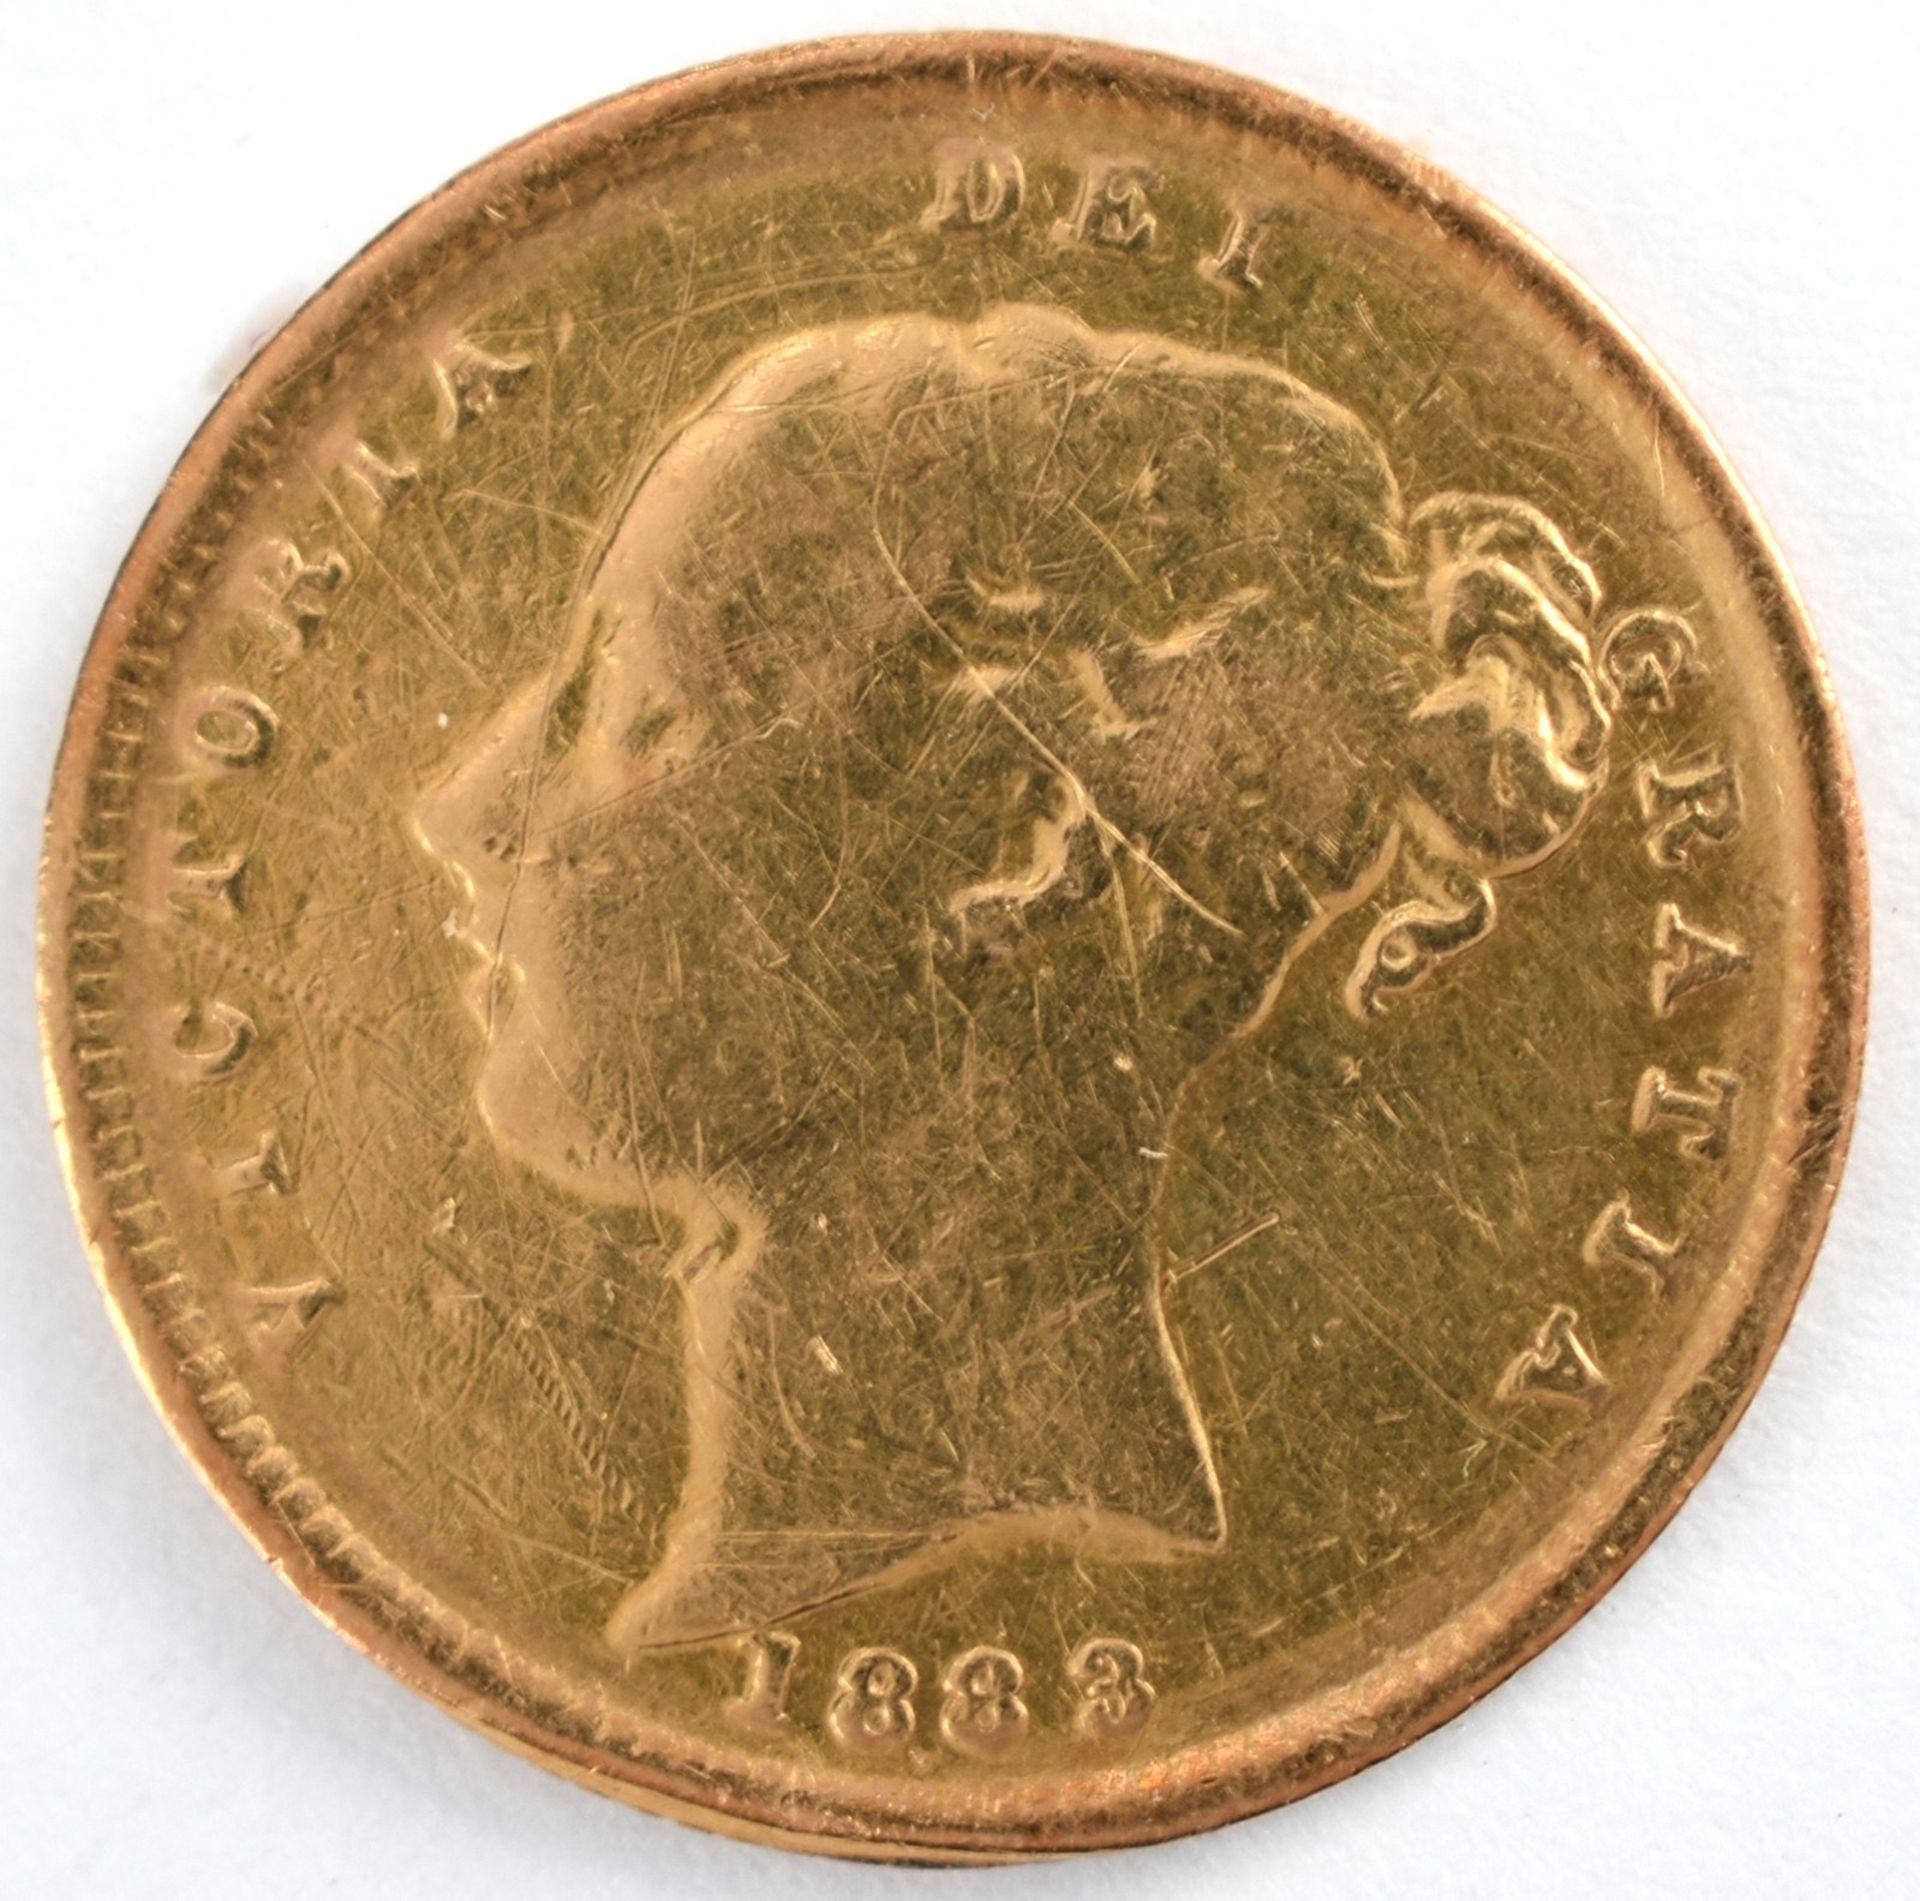 Goldmünze Großbritannien 1883 1/2 Sovereign - 1/2 Pfund in Gold, 3,994 g, 916/1000, D ca. 19,3 mm, - Bild 2 aus 3